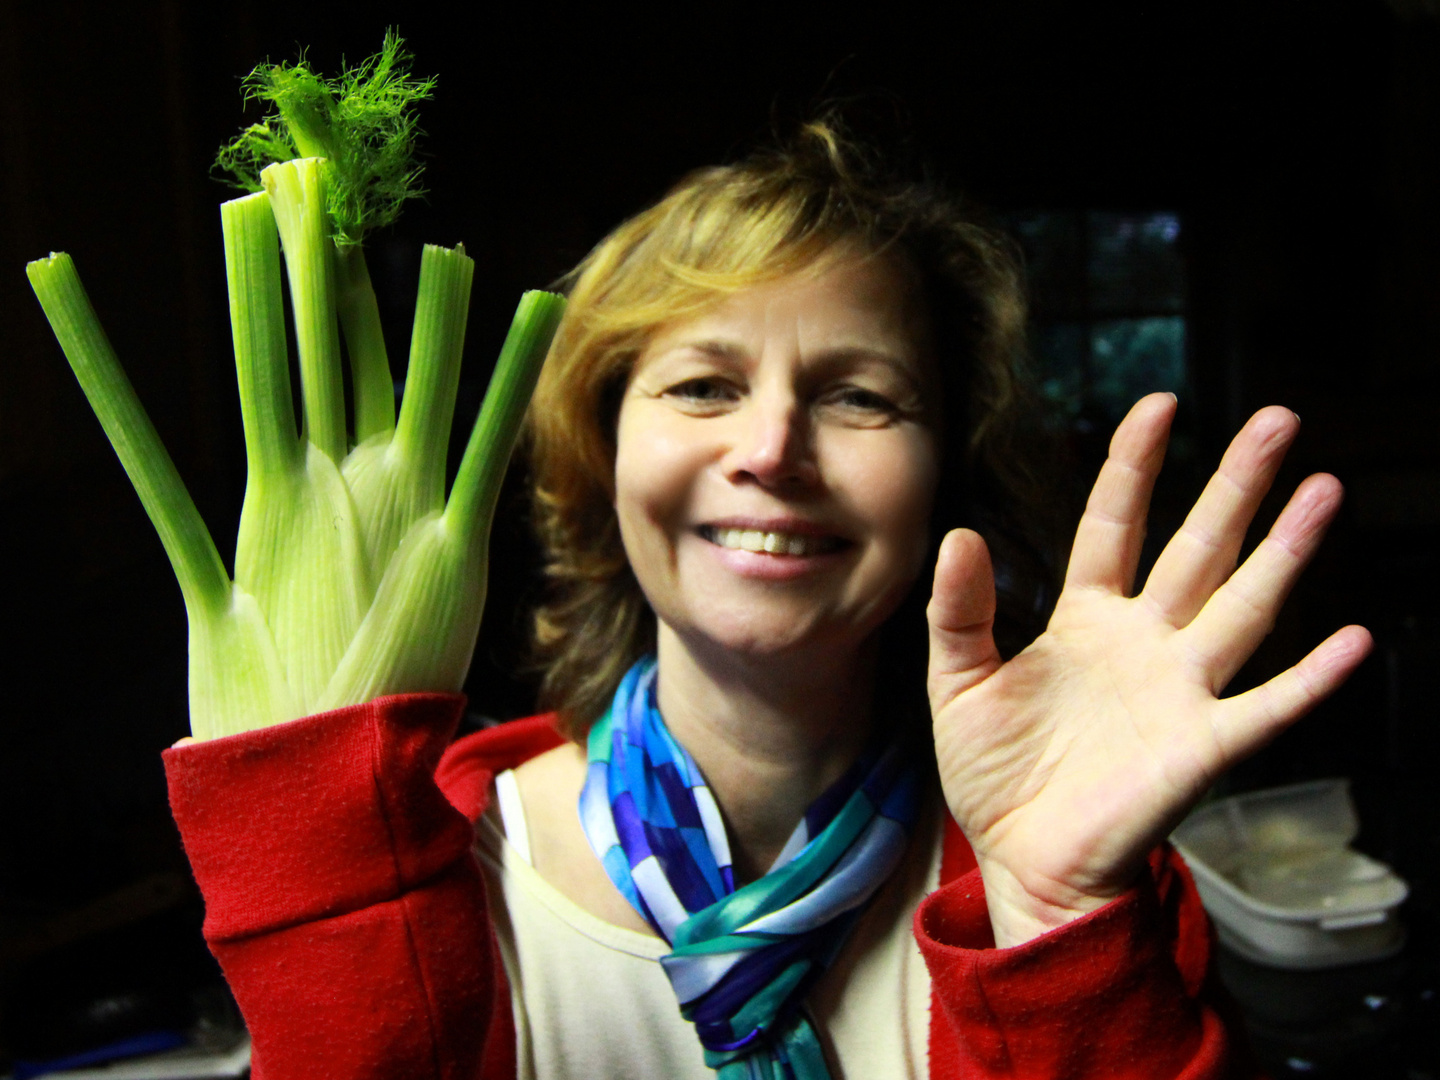 Hände hoch / oder / sie hatte schon immer ein "grünes Händchen"